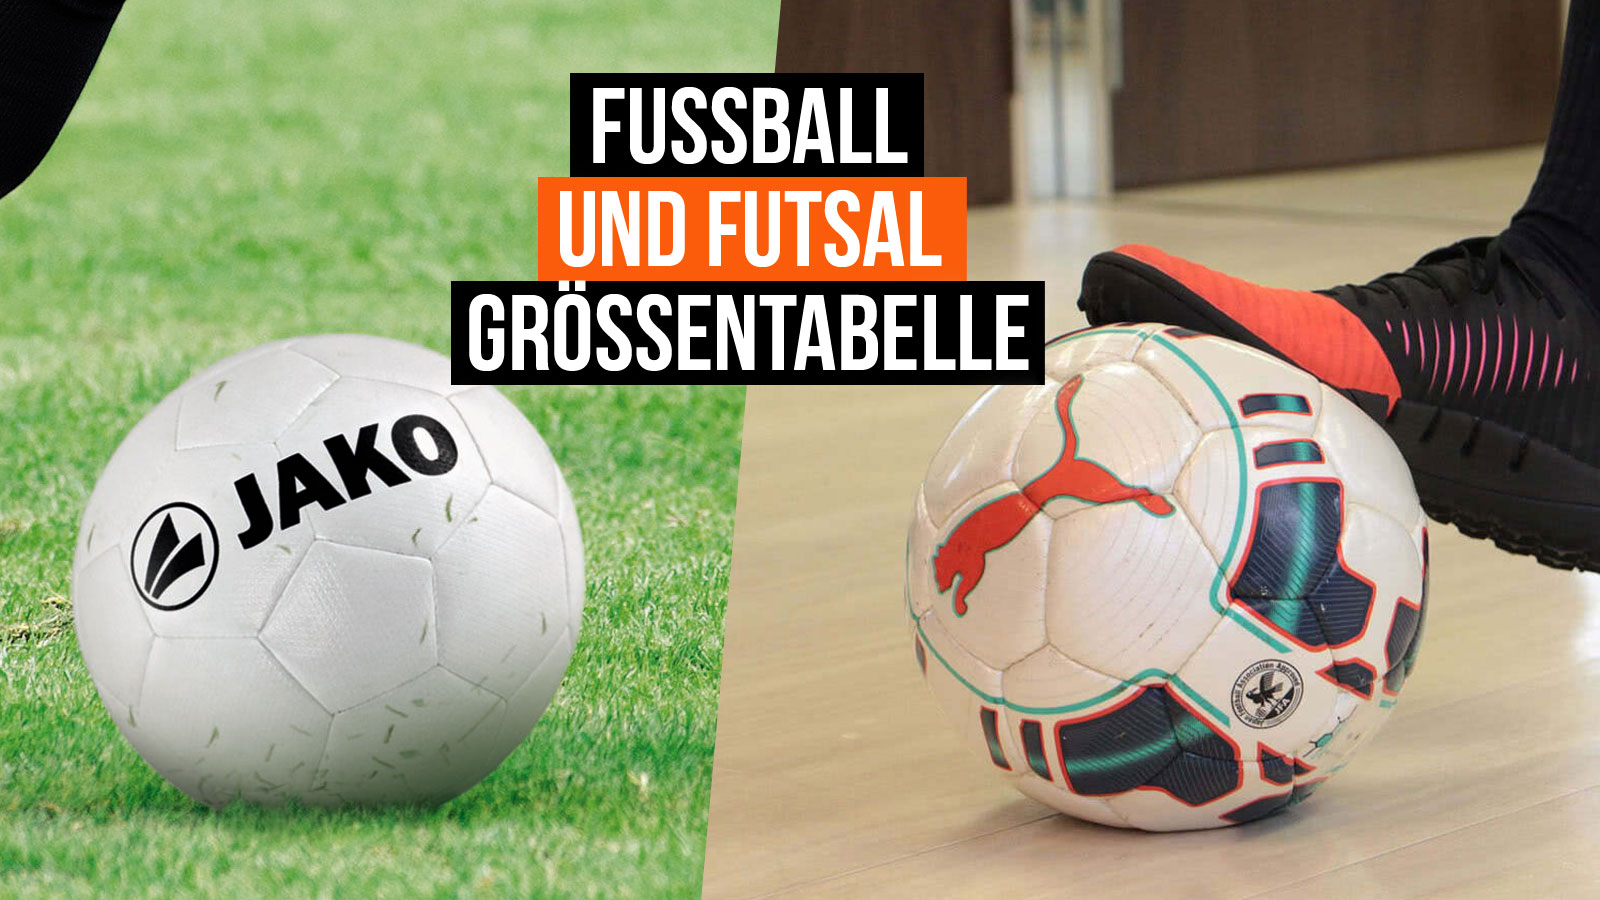 Die Größentabelle für Fußball und Futsal Bälle